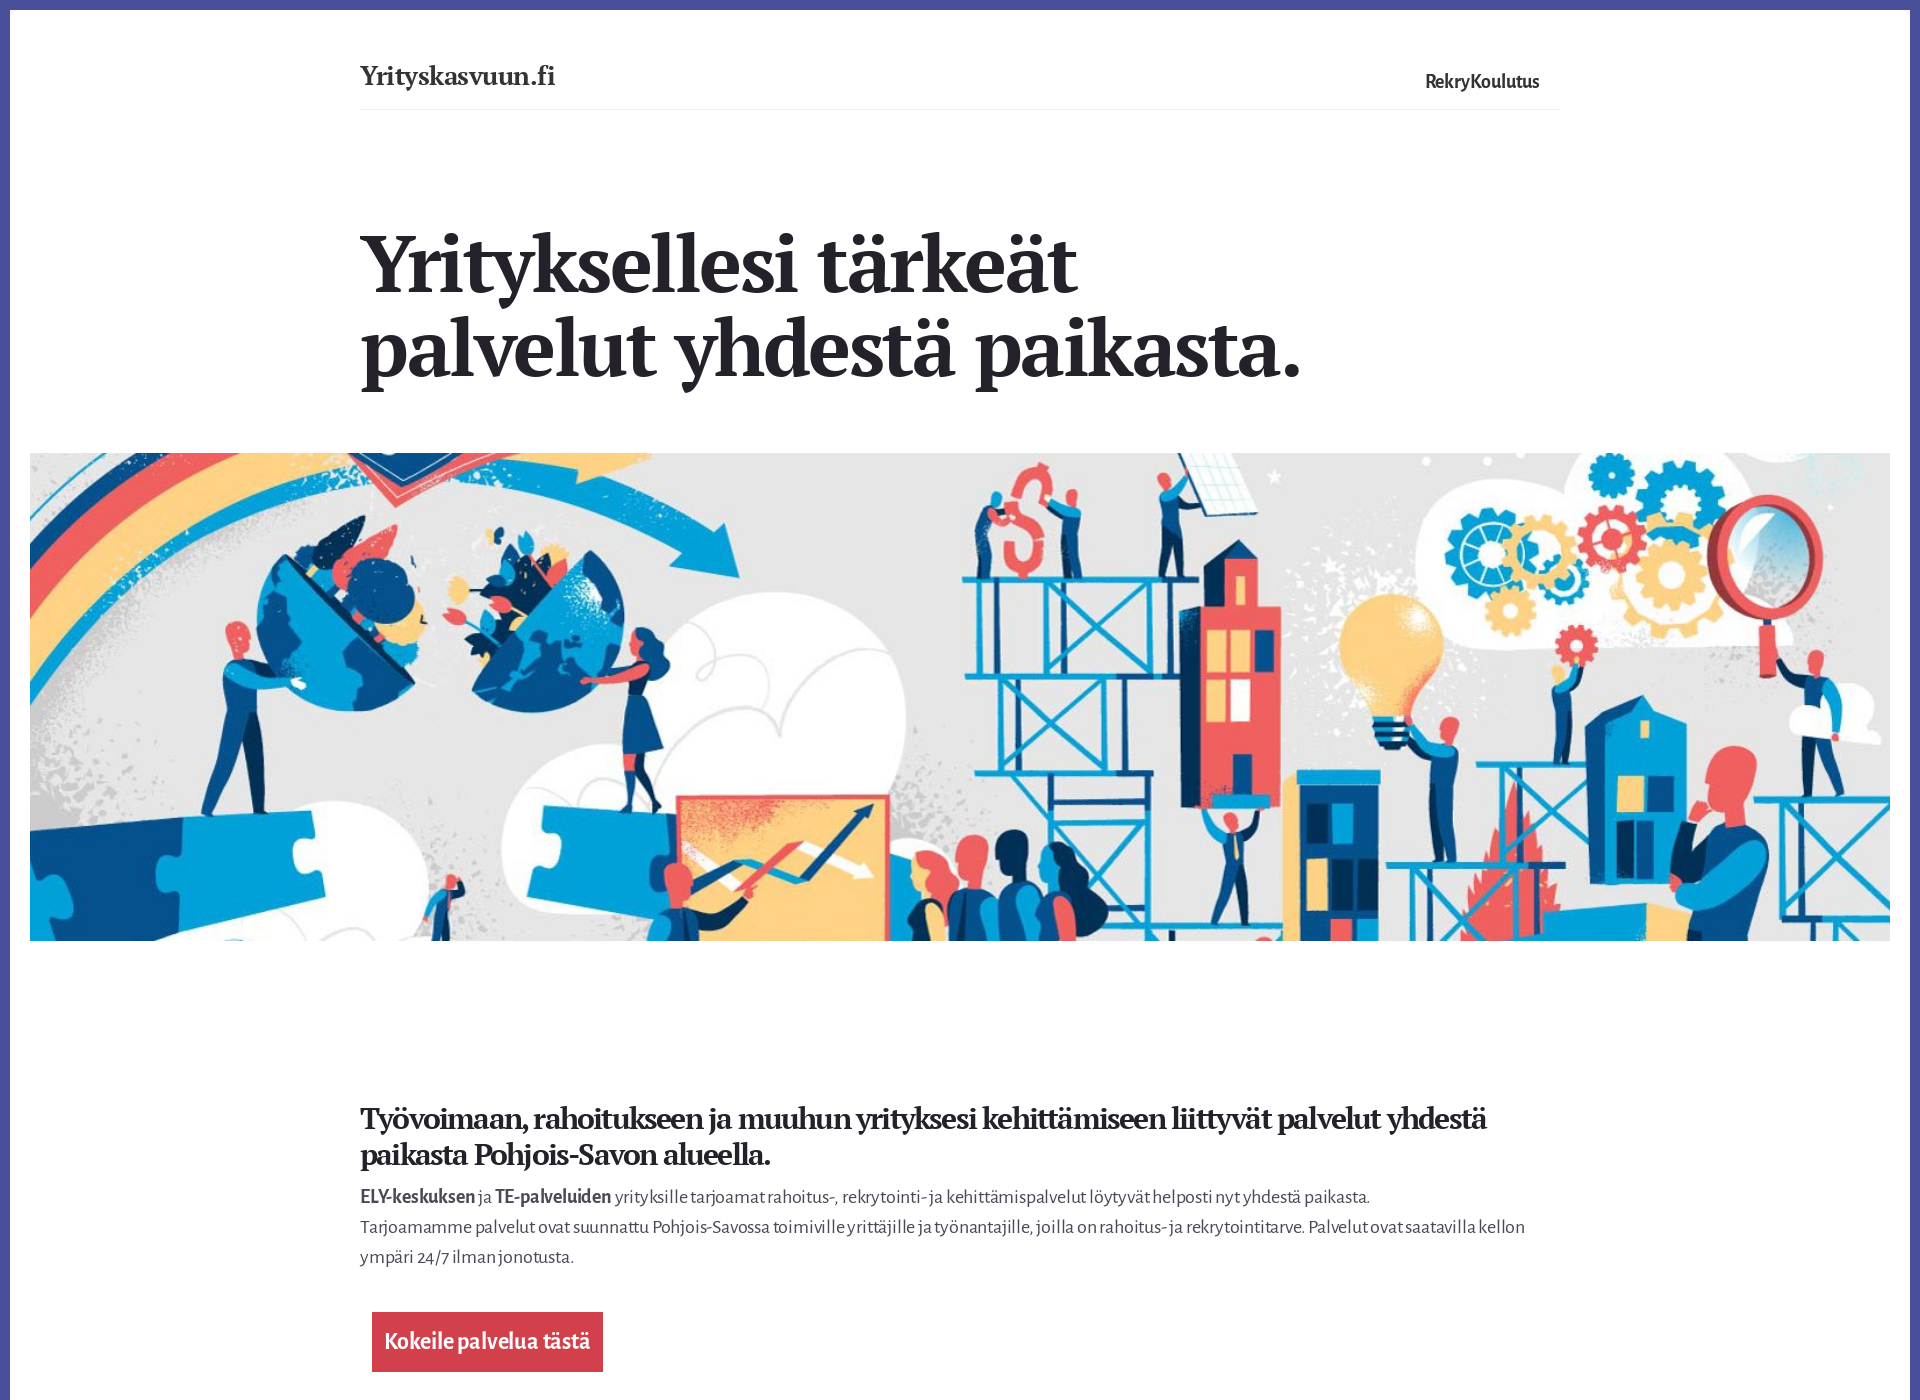 Screenshot for yrityskasvuun.fi